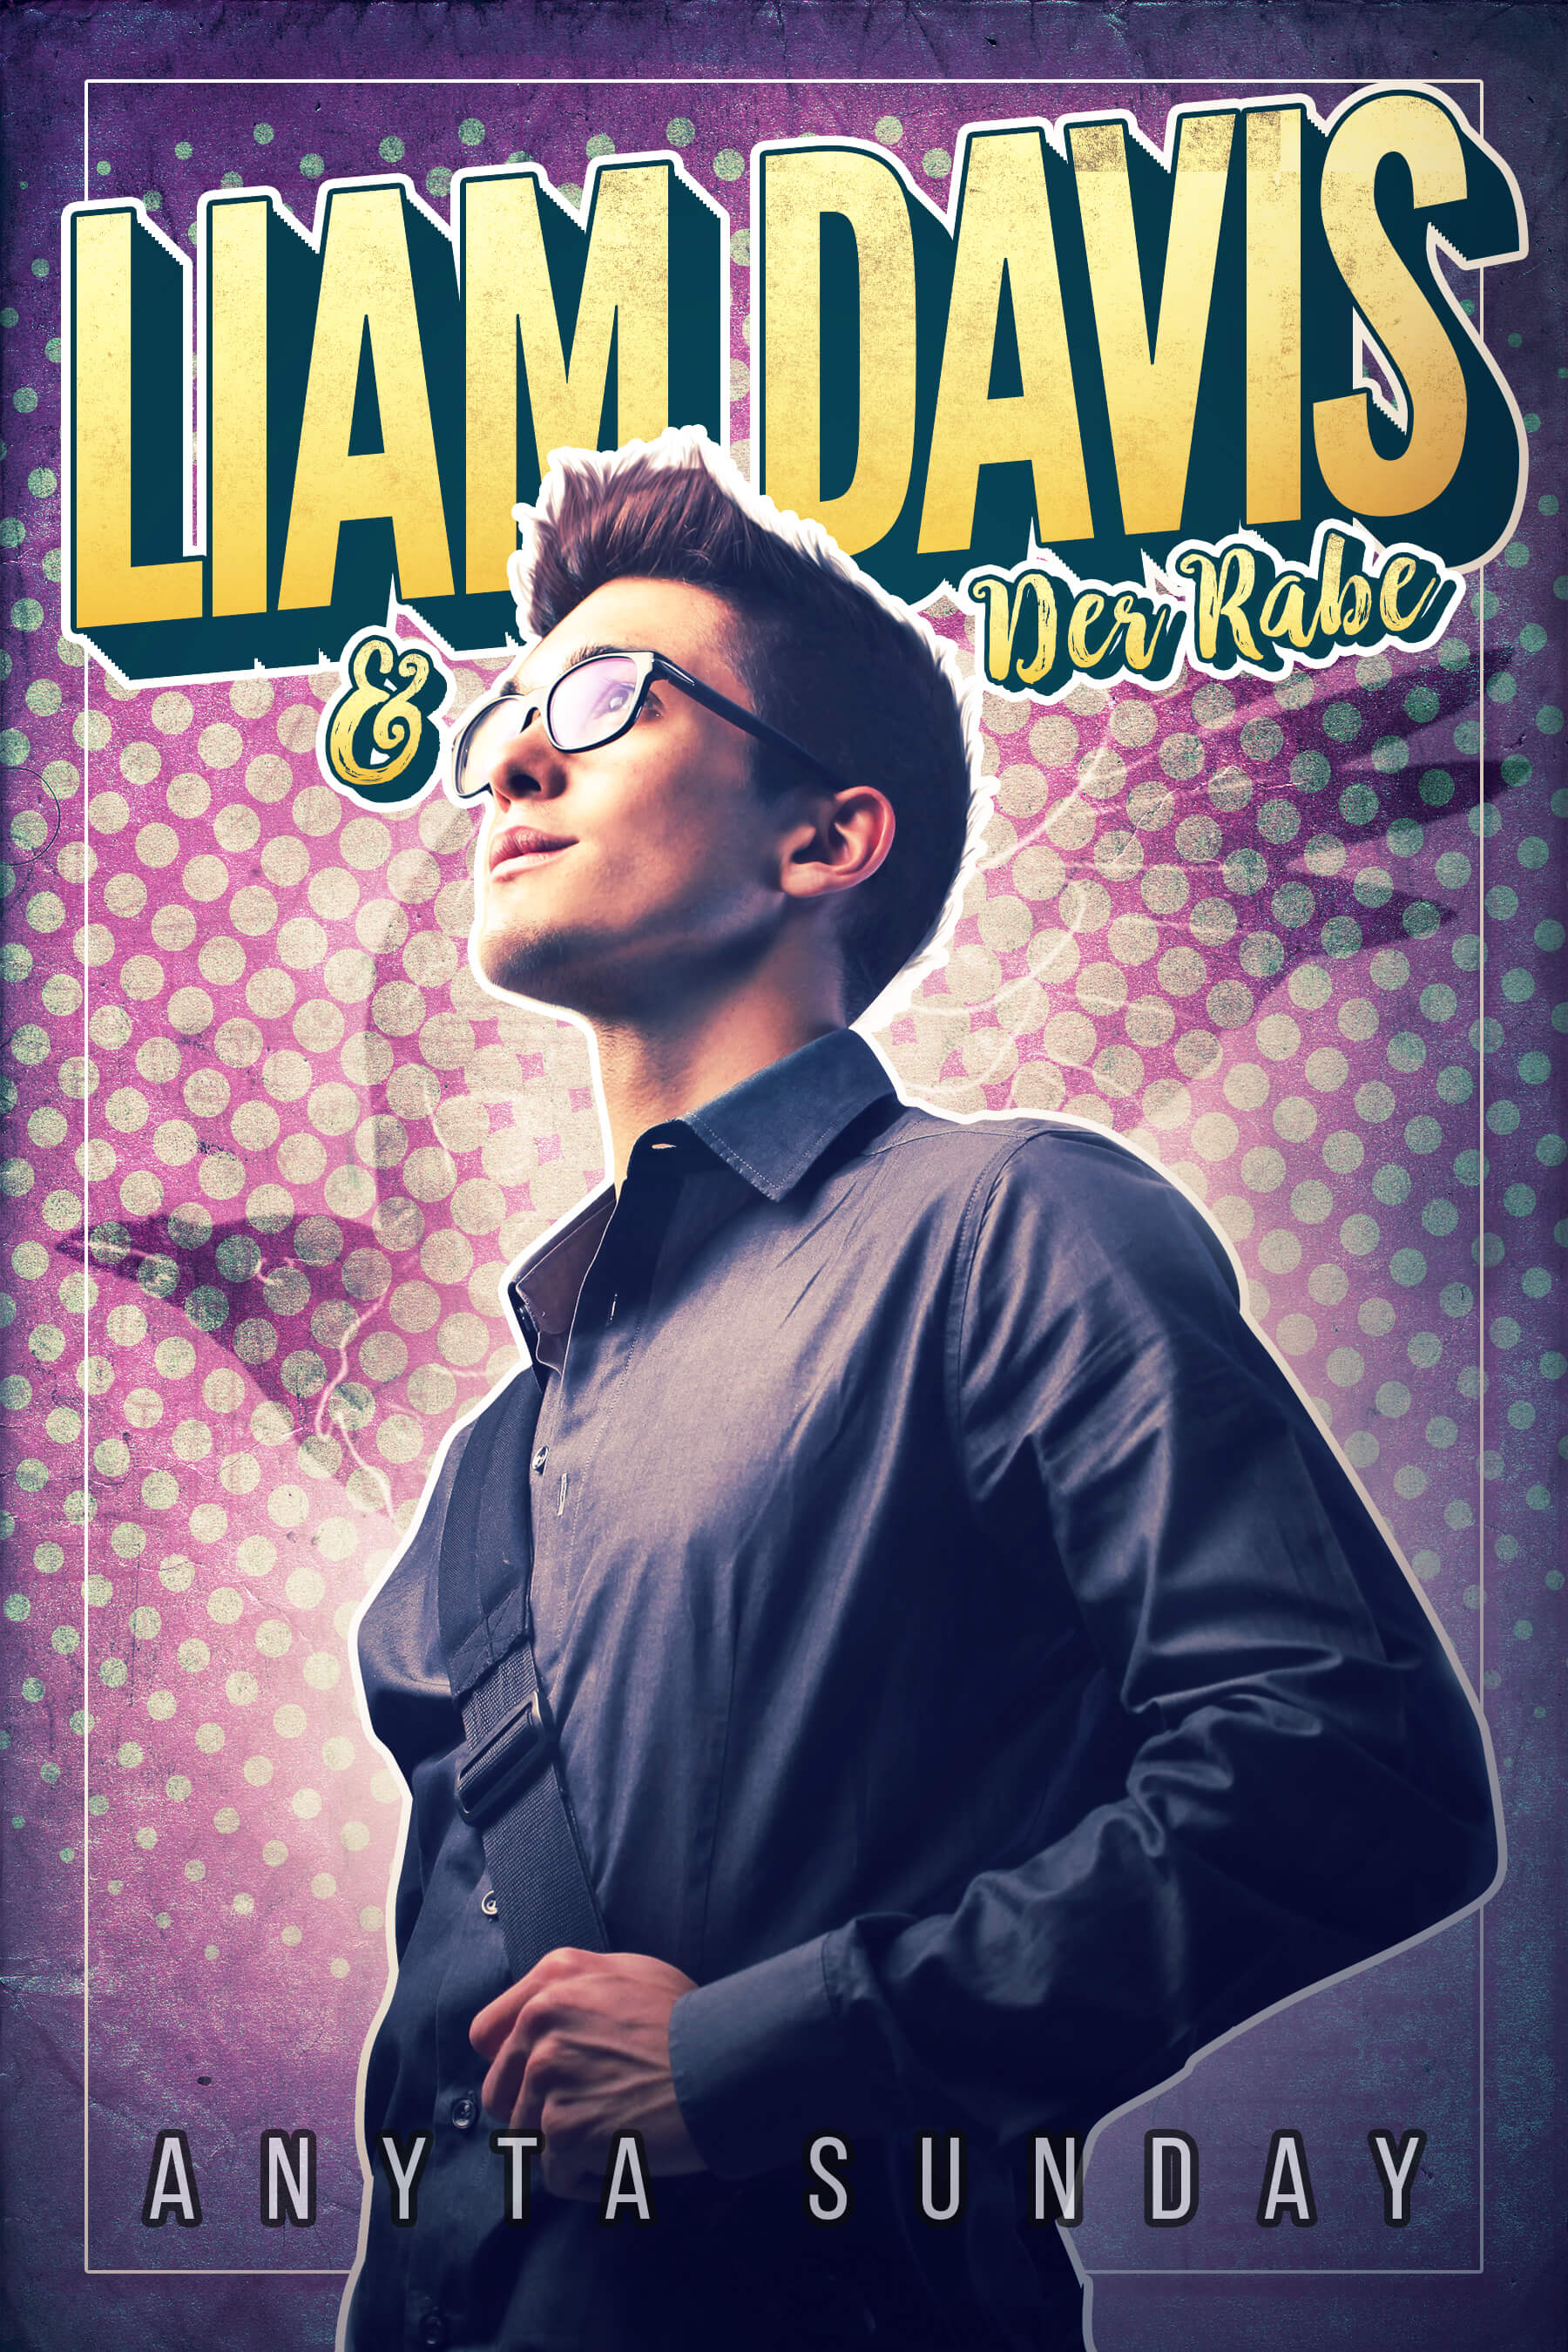 Liam Davis und der Rabe, ein schwuler Liebesroman von Anyta Sunday